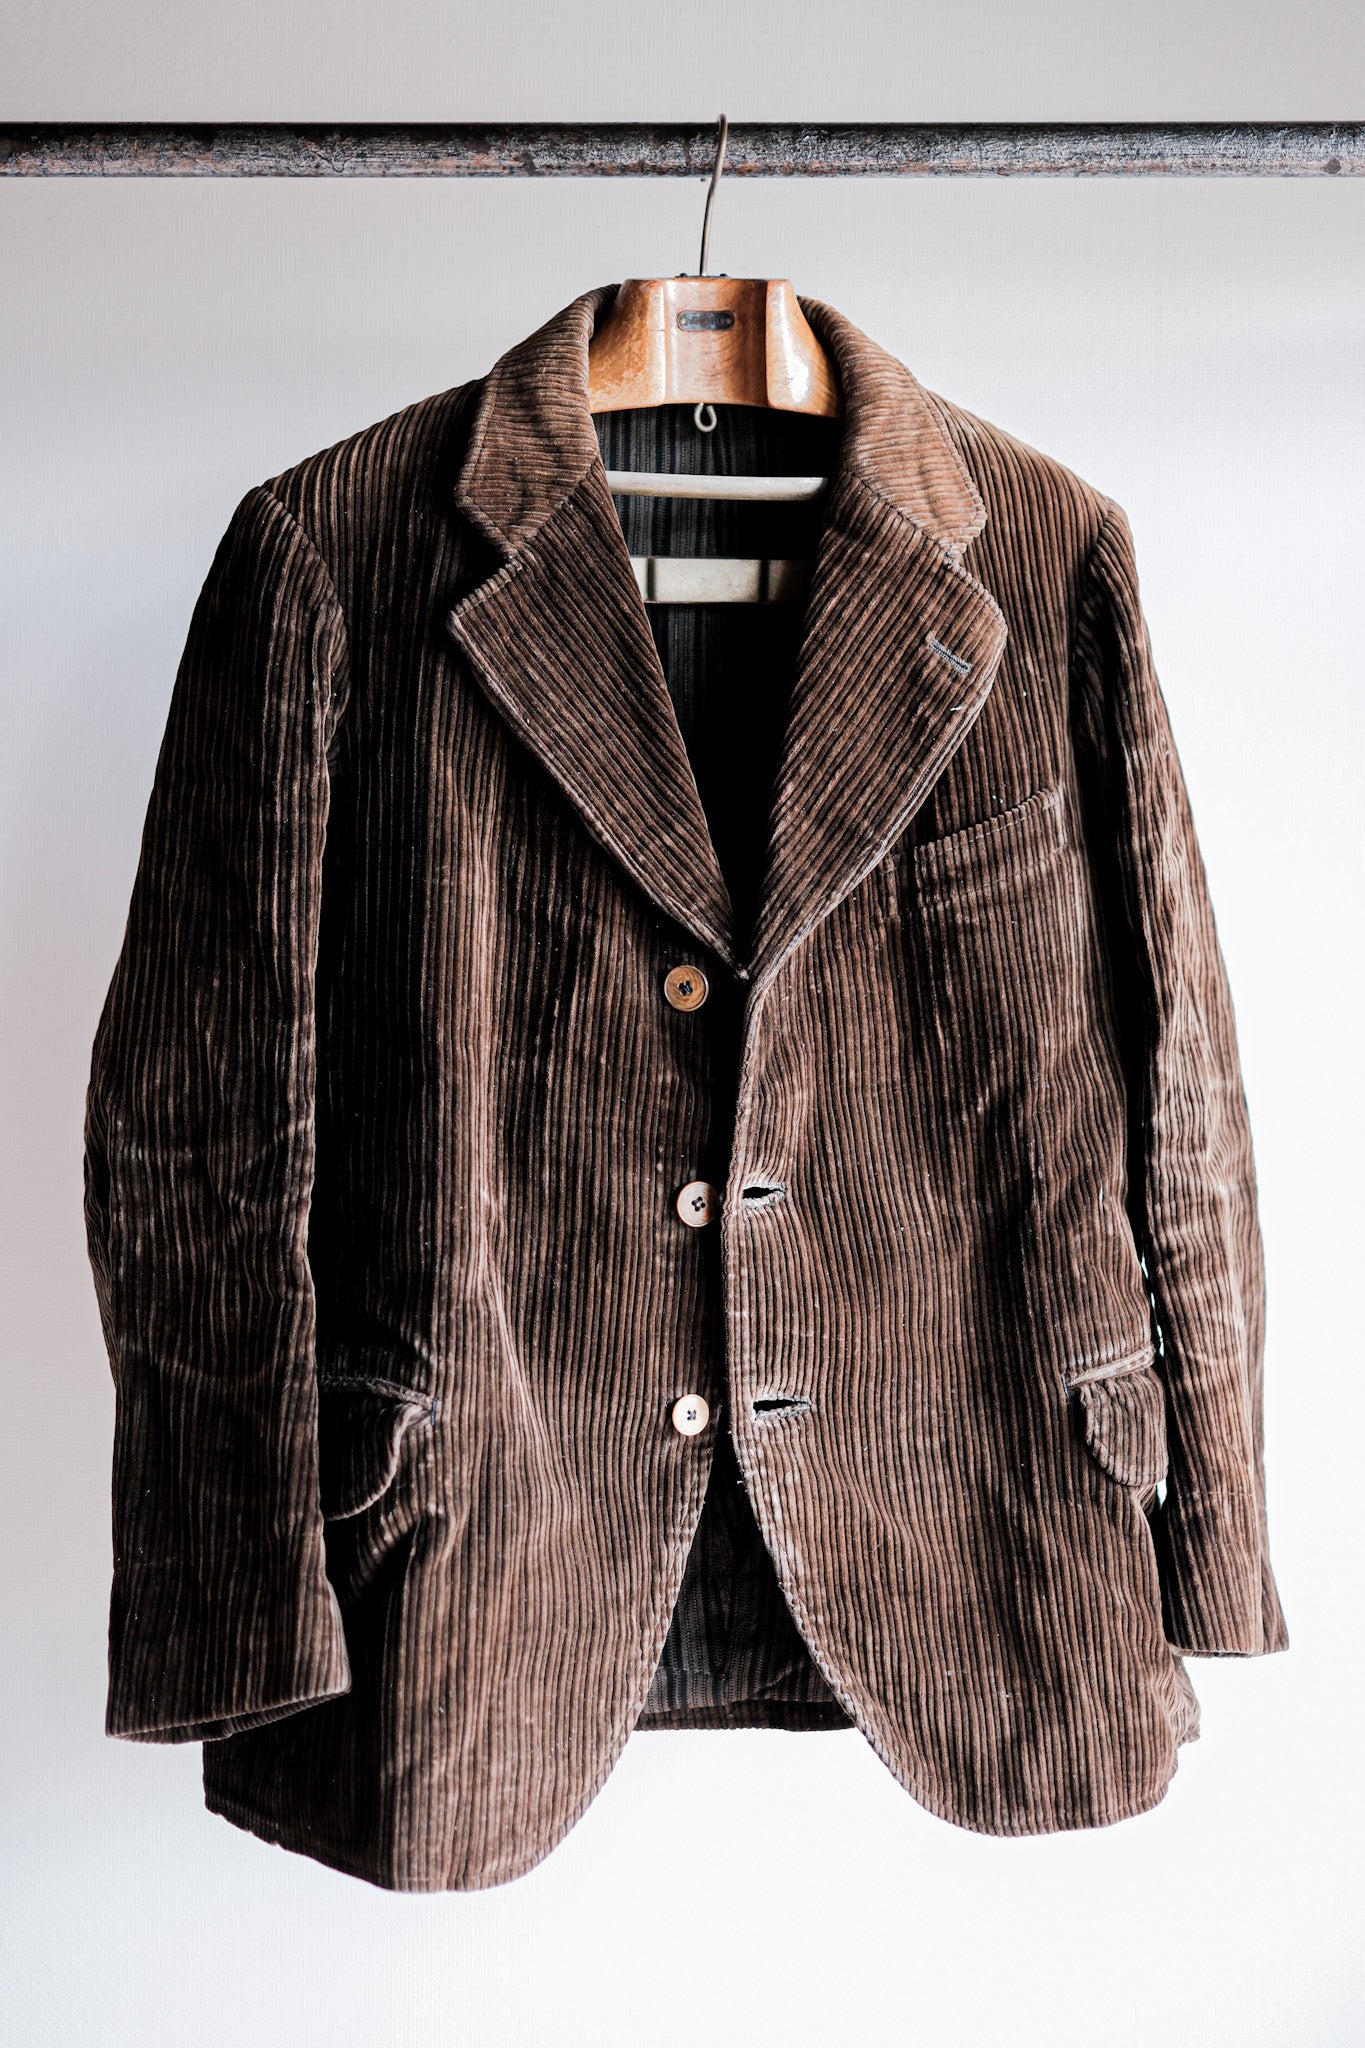 [~ 30 '] 프랑스 빈티지 브라운 코듀로이 옷깃 재킷